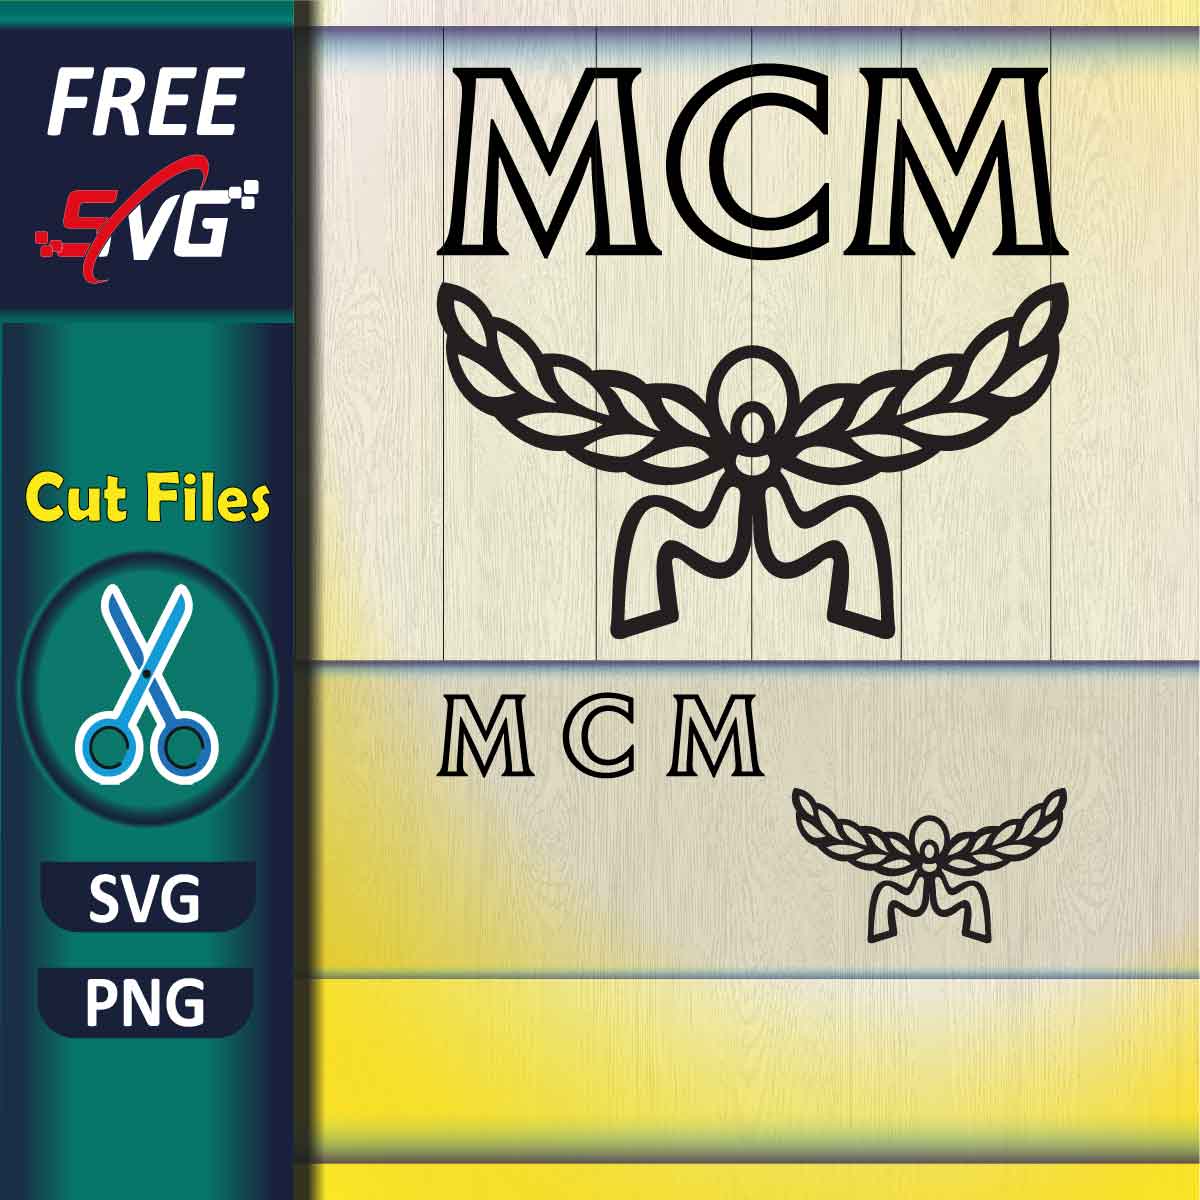 MCM pattern SVG Free Download